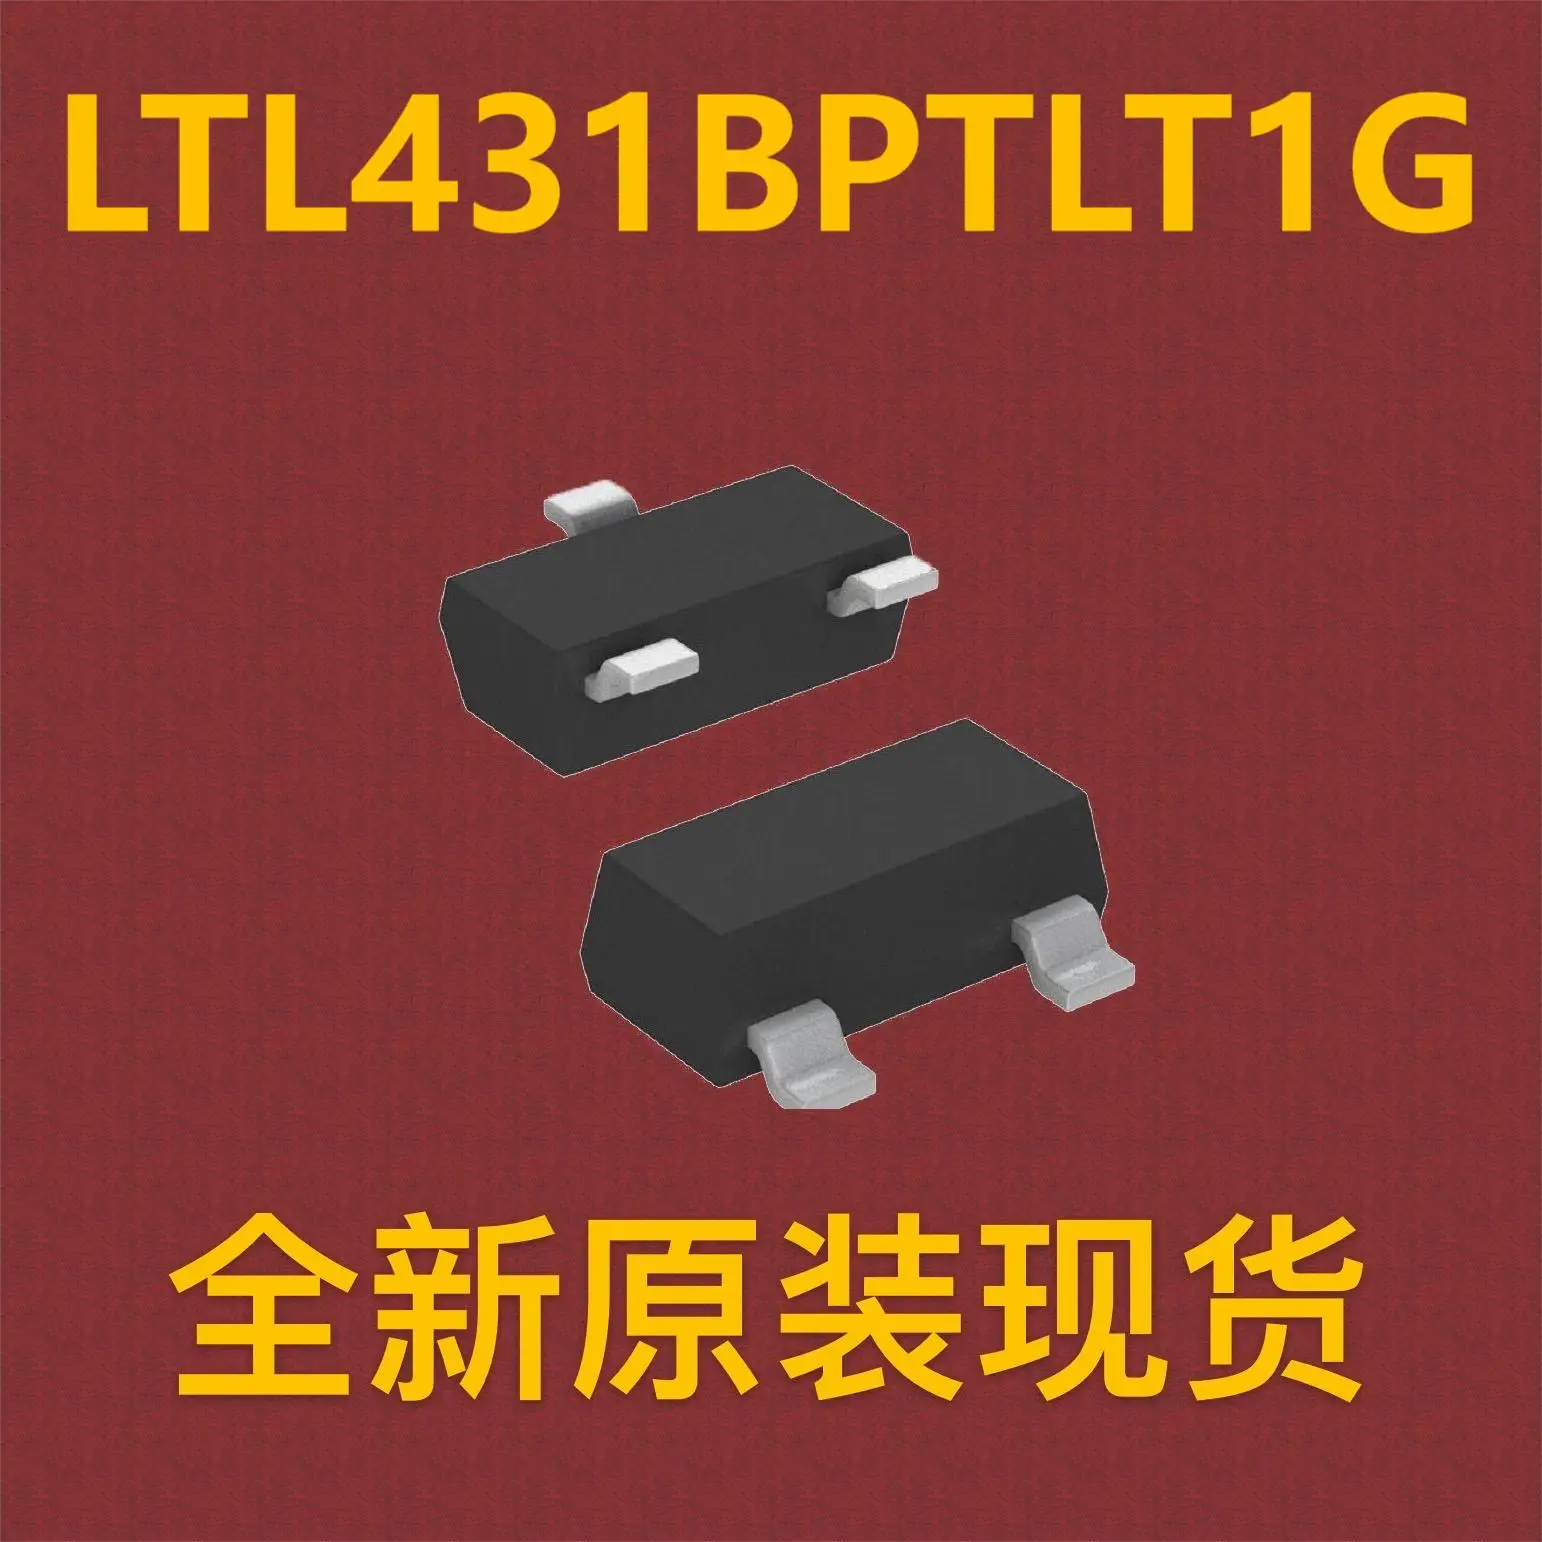 (10шт) LTL431BPTLT1G SOT-23-3